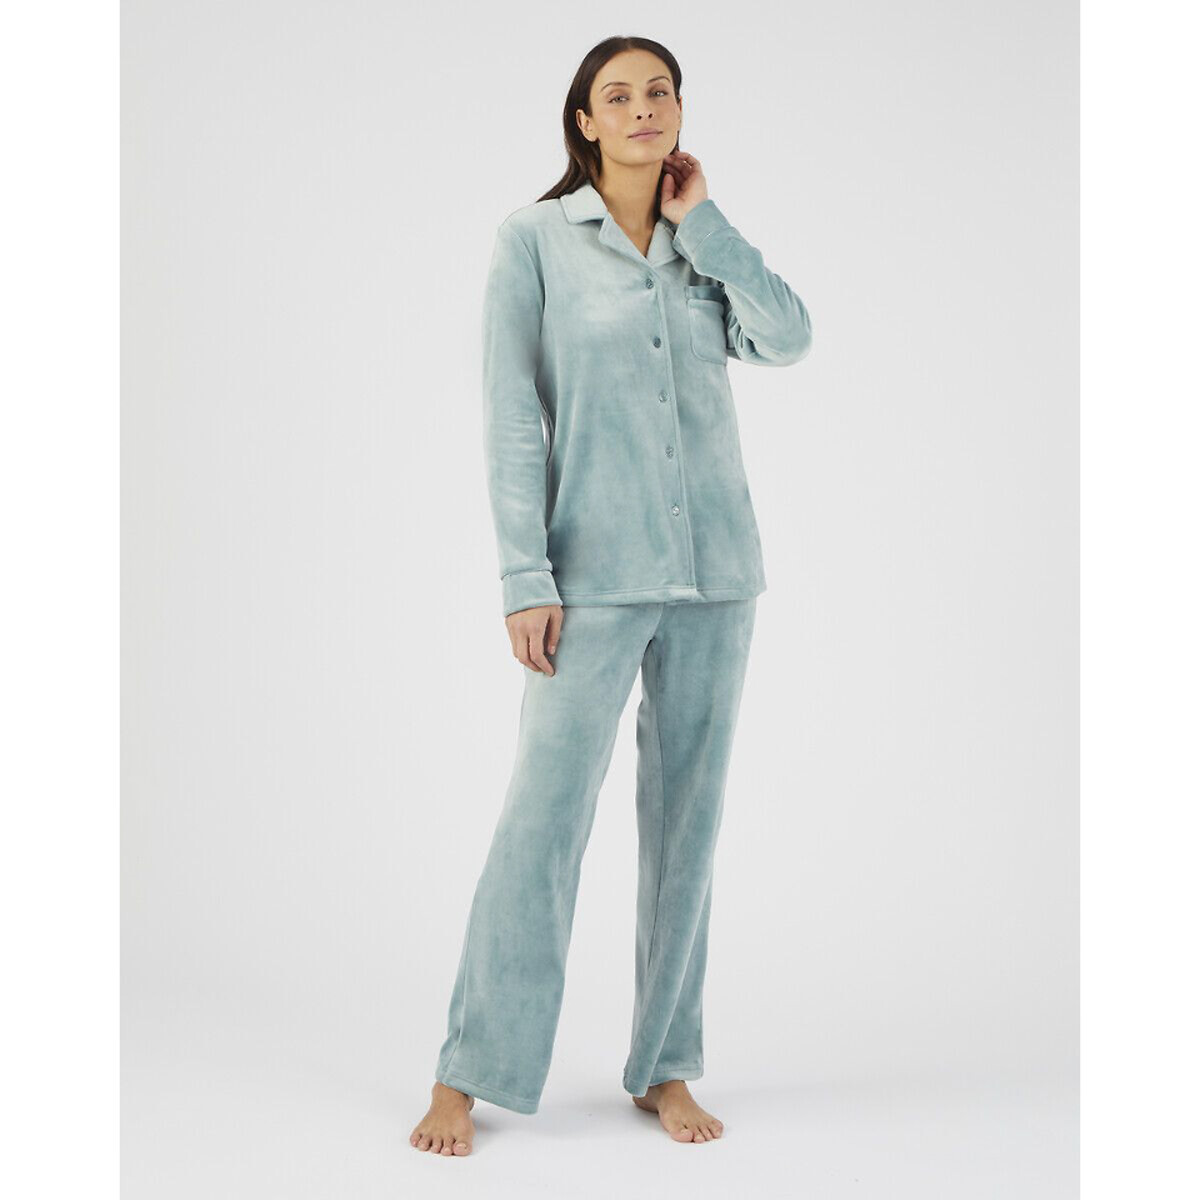 Комплект пижамный из термолактила La Redoute XS синий комплект пижамный с длинными рукавами la redoute xl синий